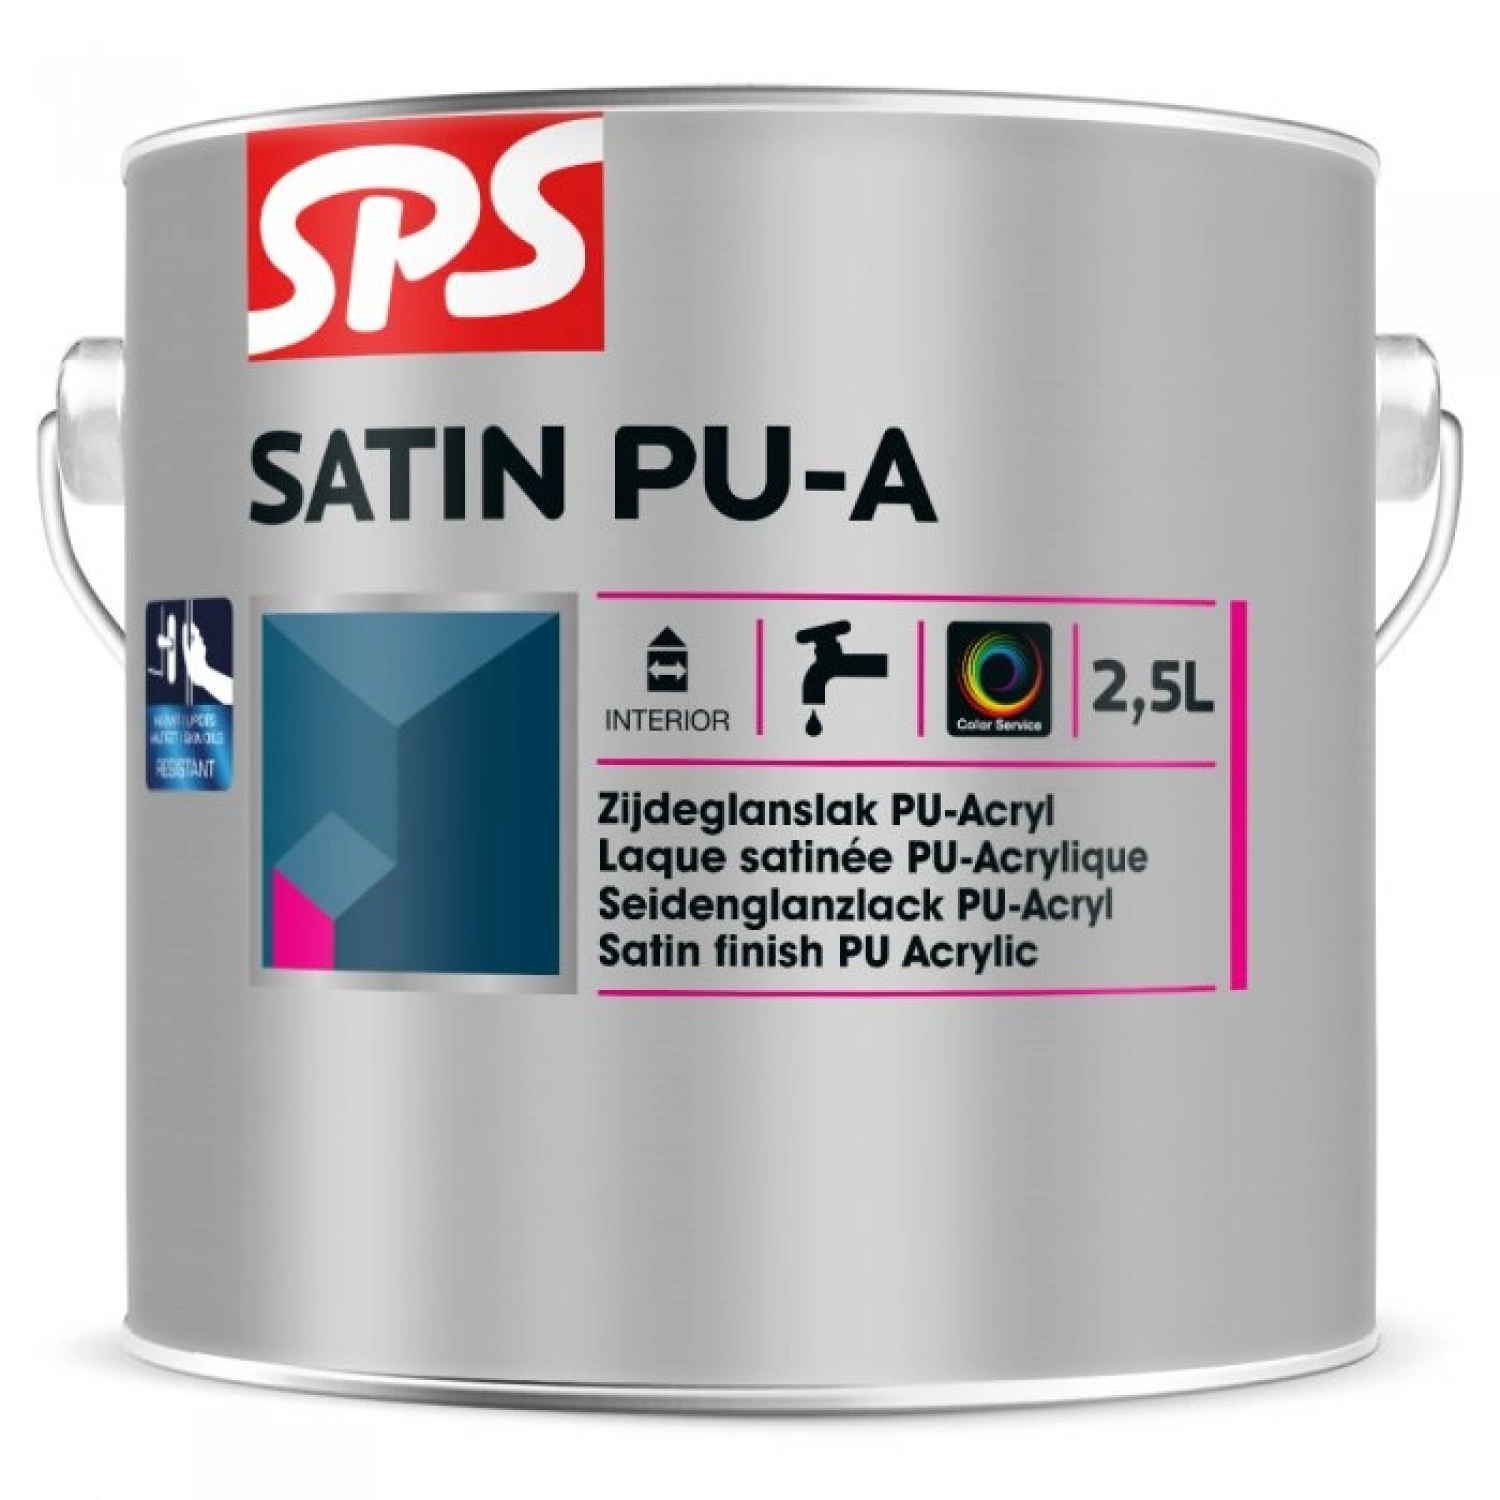 SPS Satin Pu-A Lak - RAL 9010 - 2,5L-image